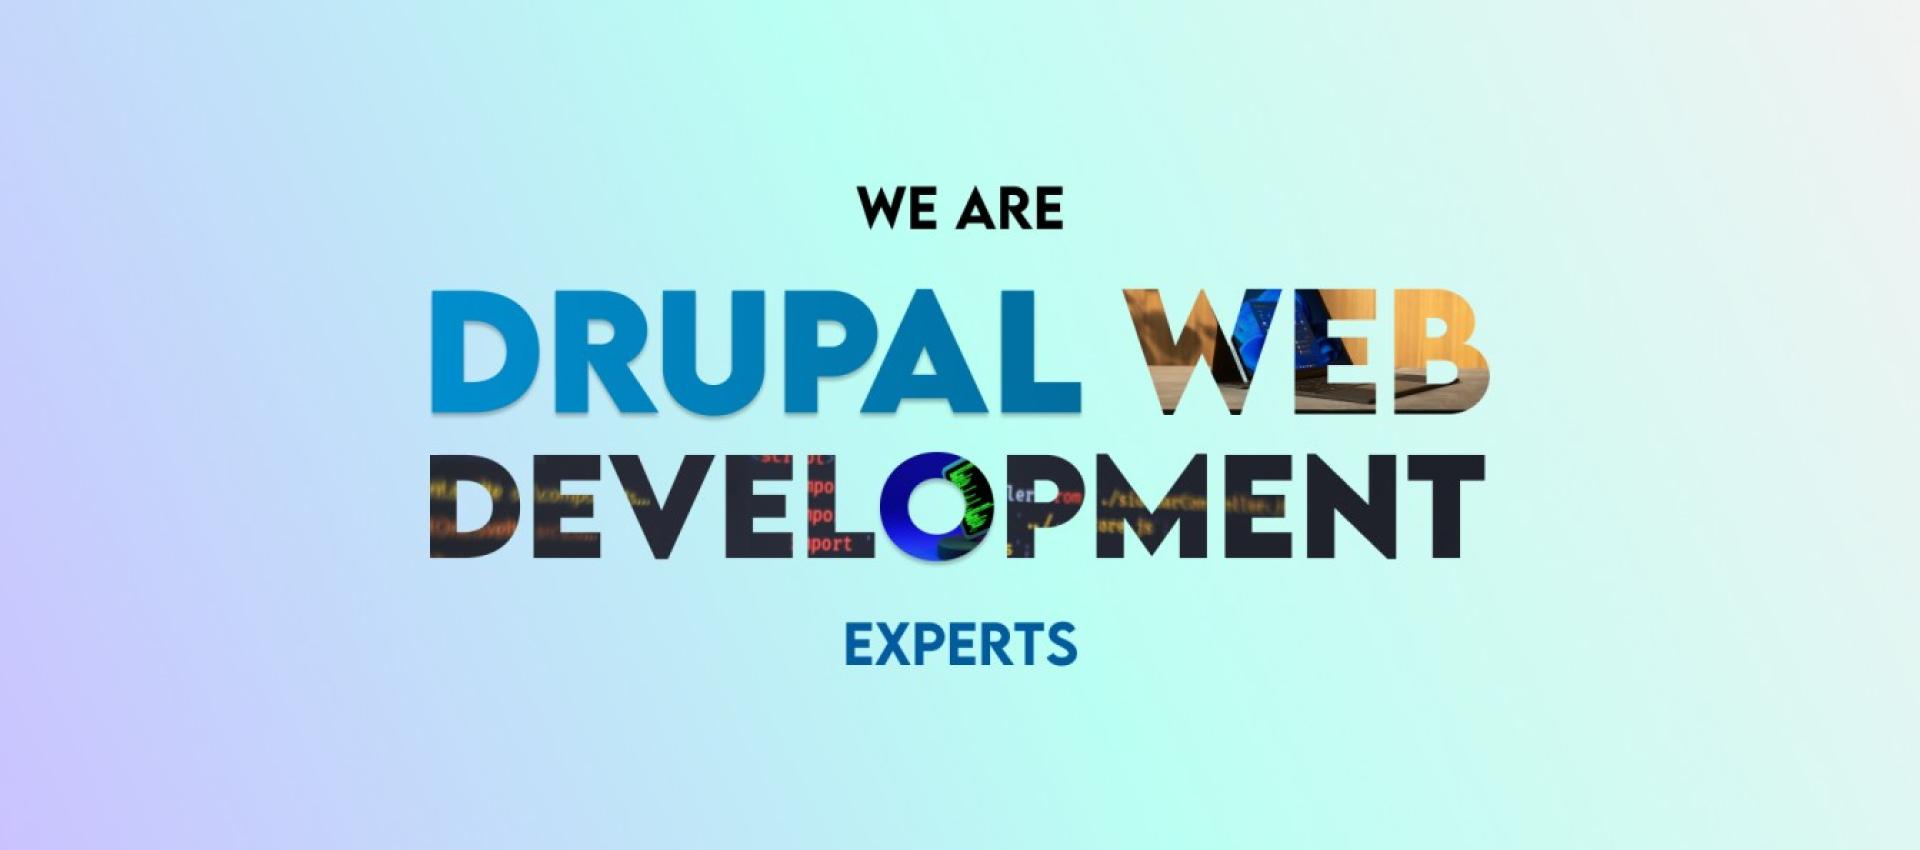 Drupal experts